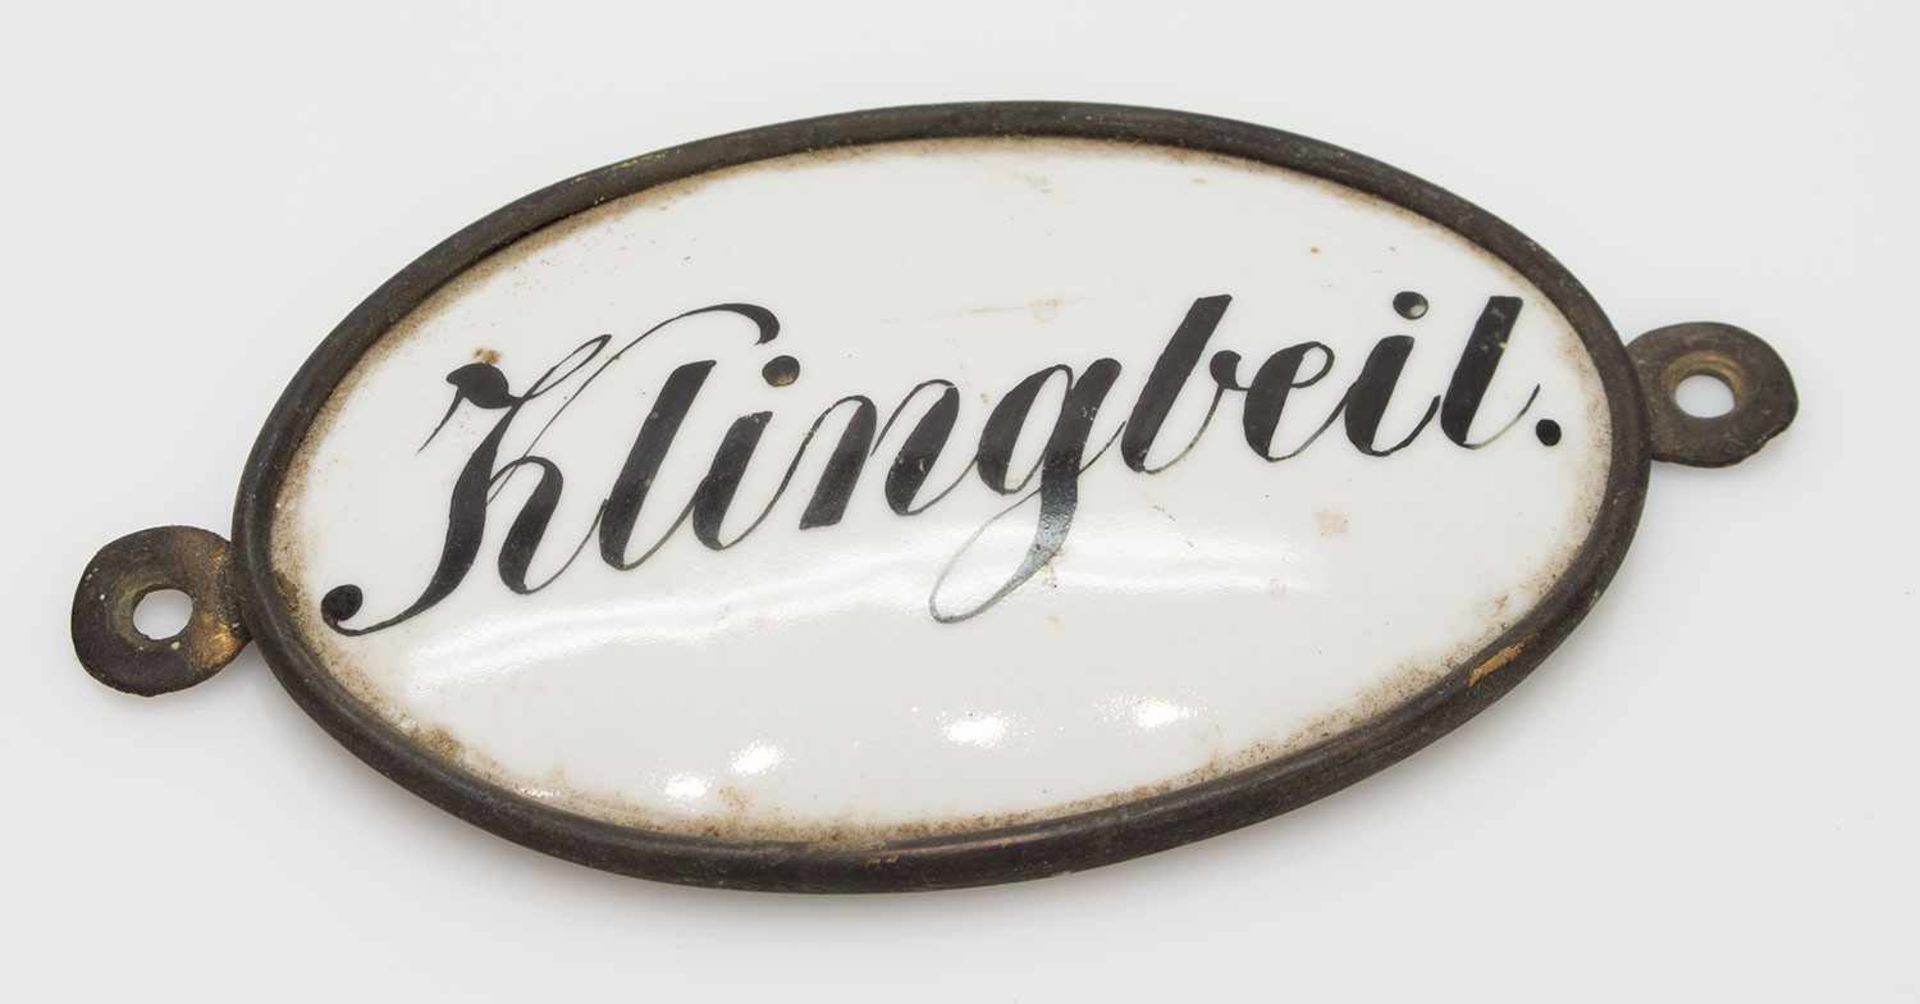 Türschild antikes Porzellantürschild in Metallfassung, handgeschriebener Name "Klingbeil", 12 x 6,